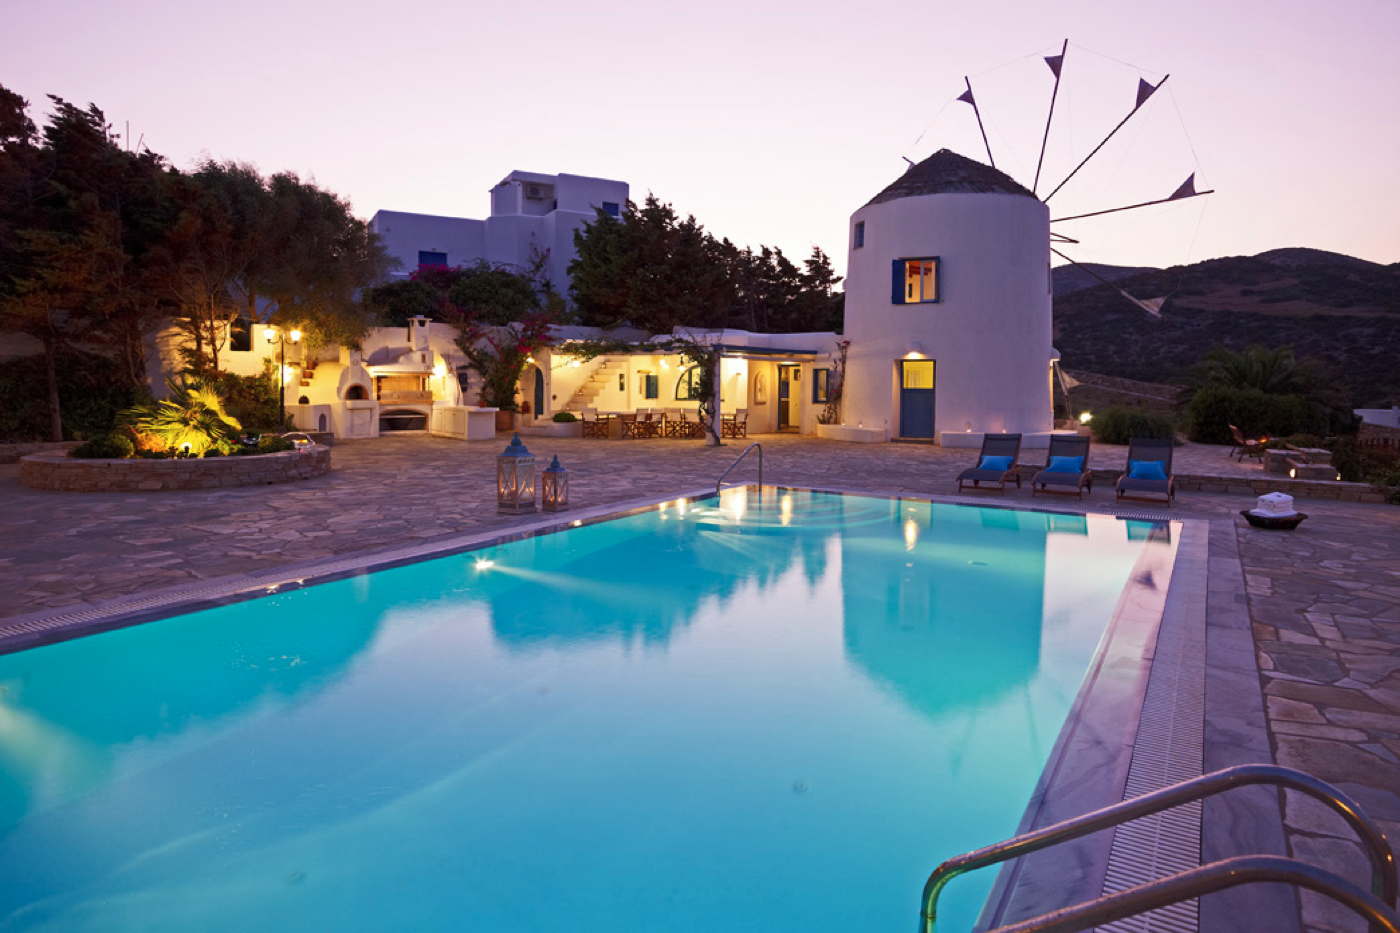 Exklusive Ferienvilla auf Antiparos in Griechenland mit Pool 